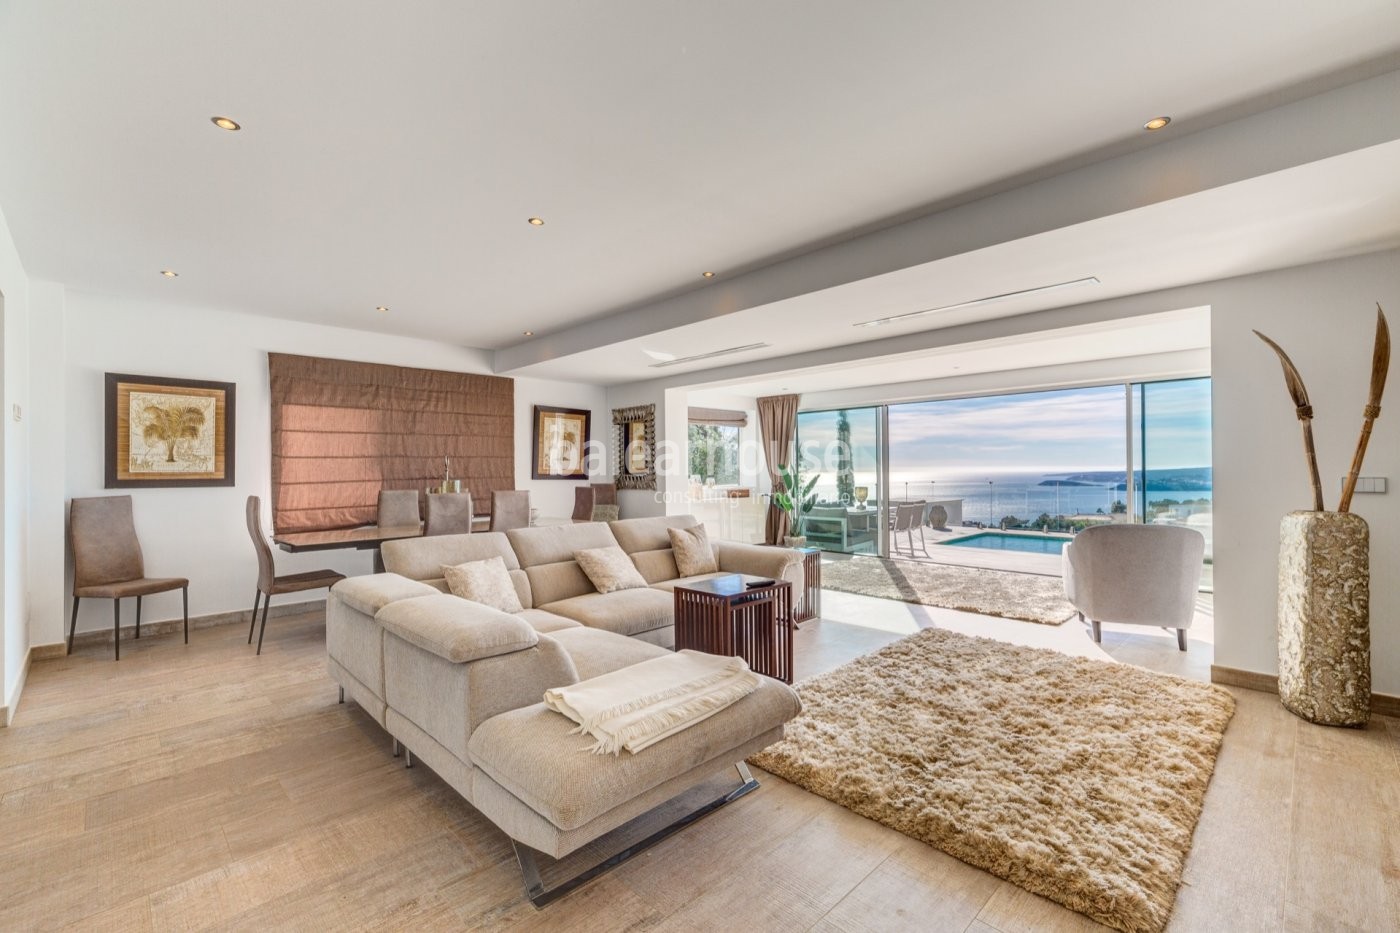 Fabulosa villa de diseño moderno abierta a unas preciosas vistas al mar en Costa d’en Blanes.